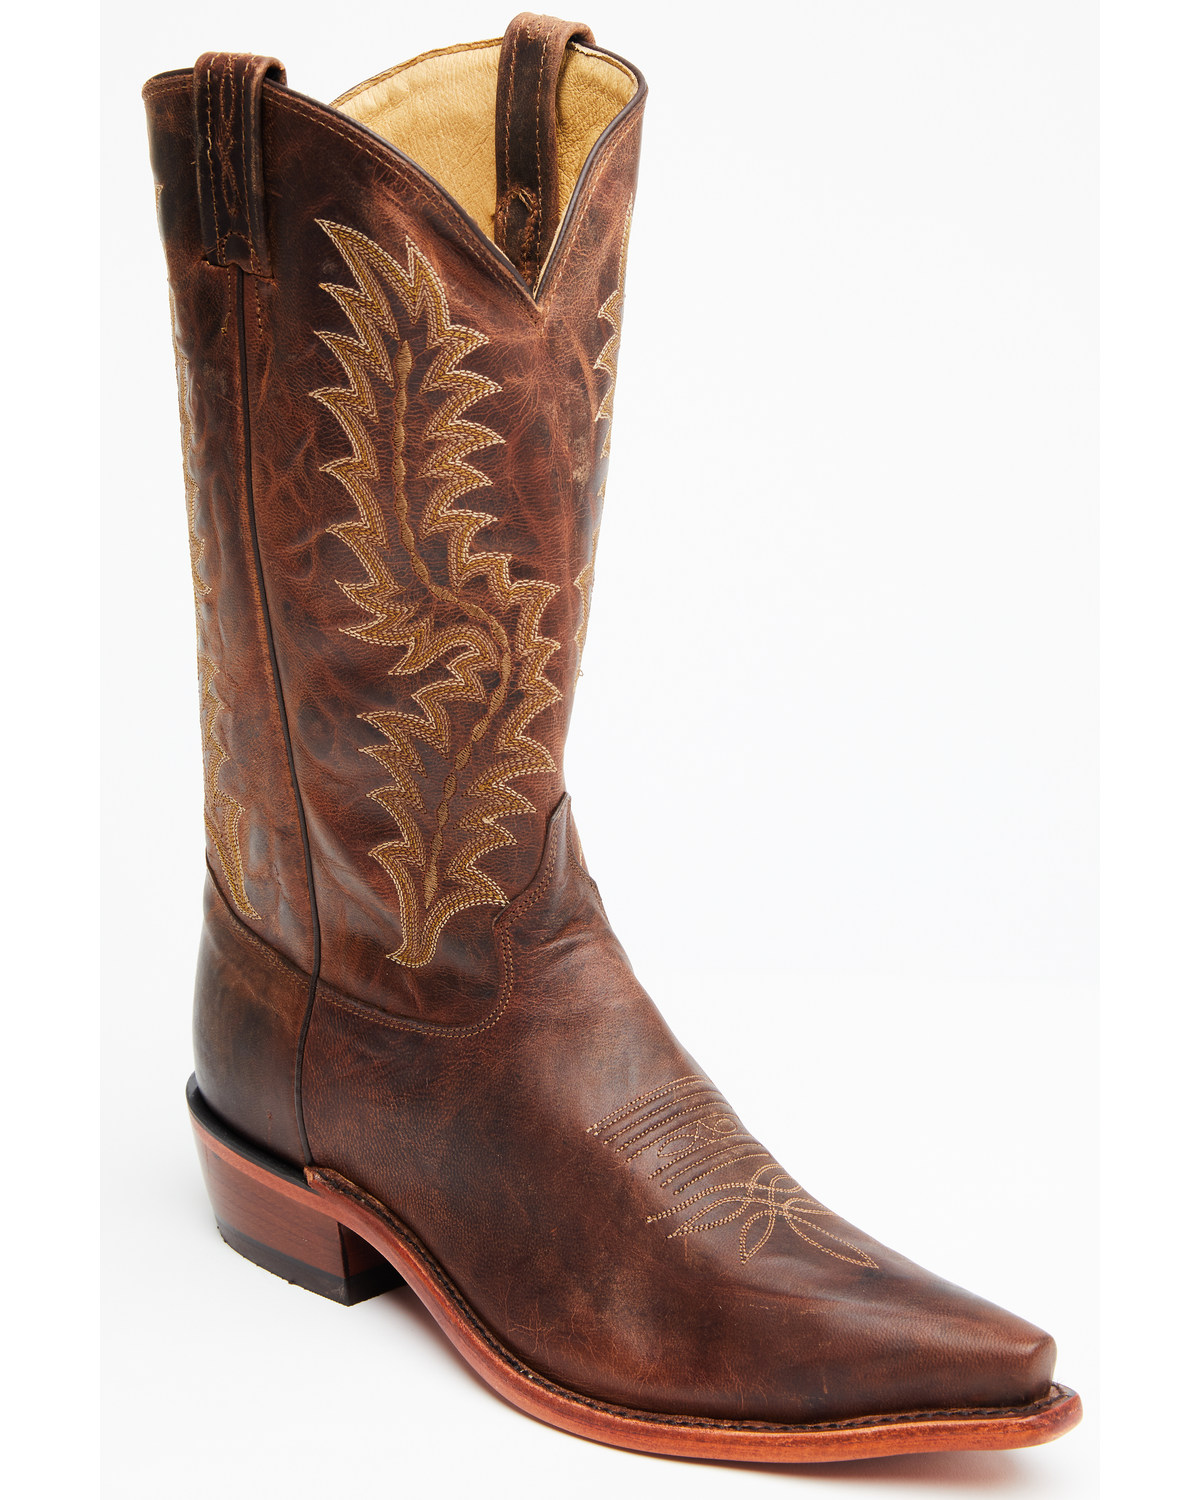 Tony Lama El Paso Boots - Snip Toe 